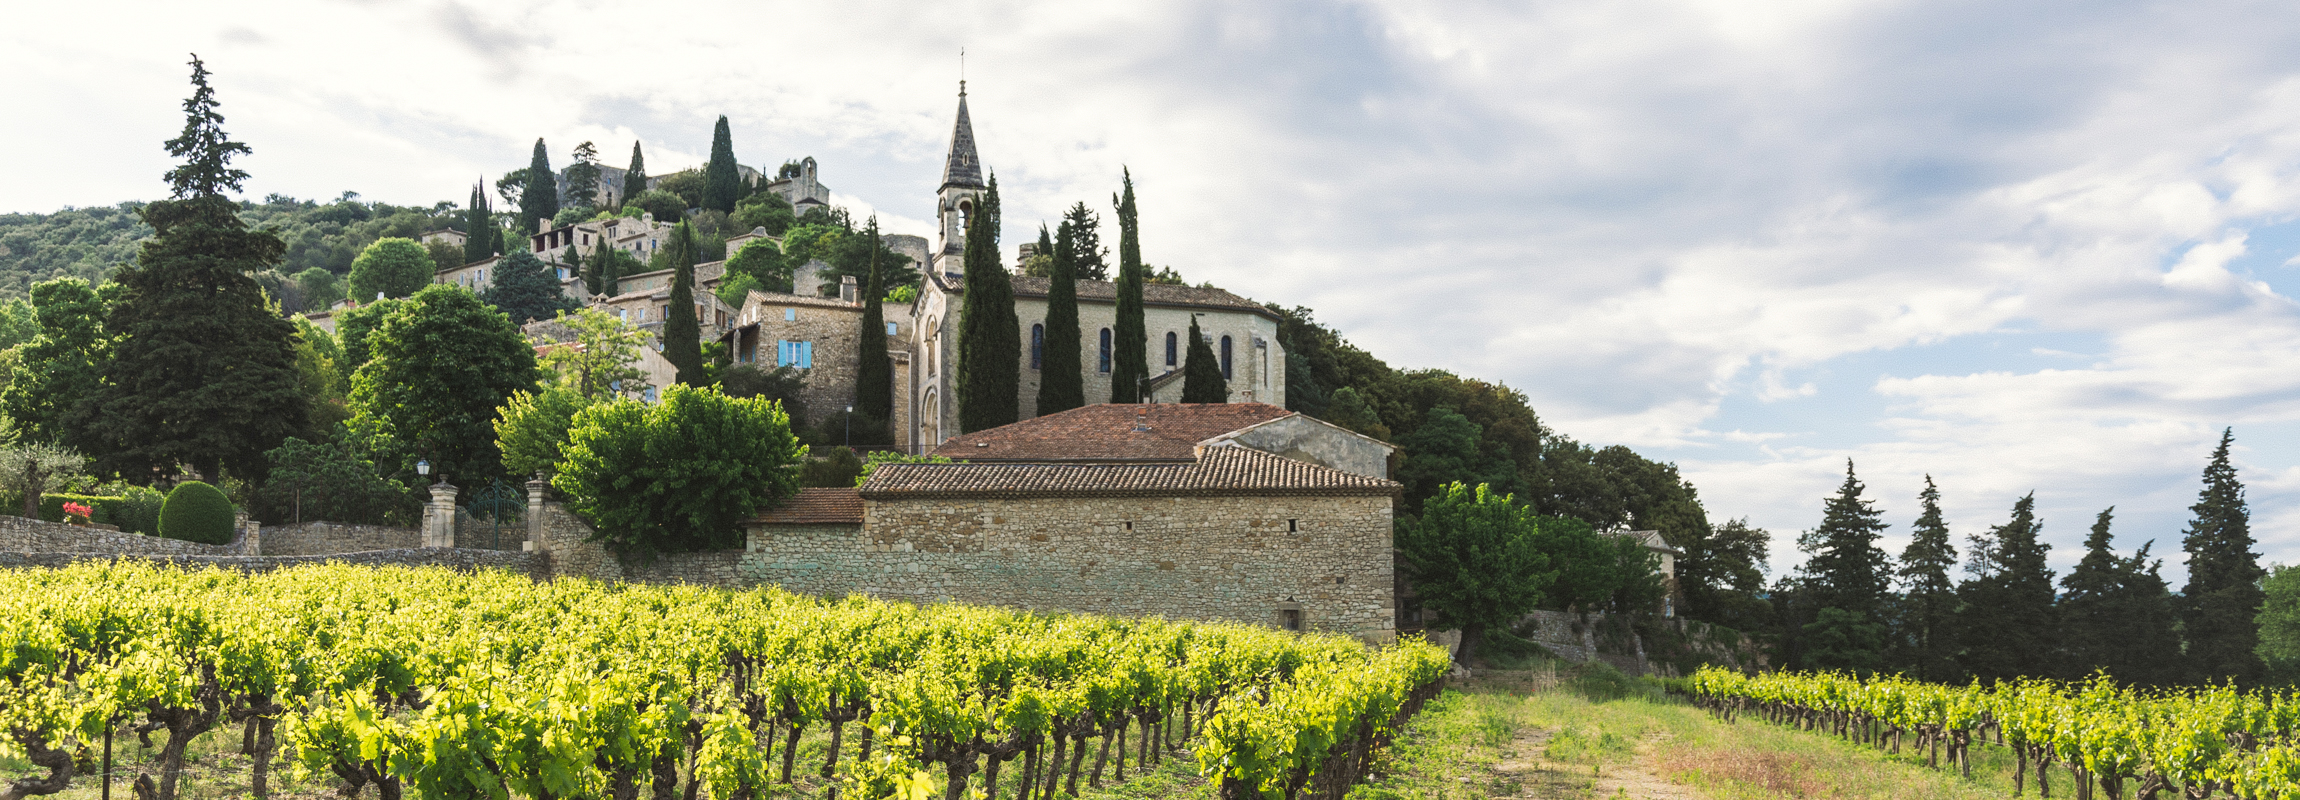 Das historische Staedtchen hier im Bild ist La Roque-sur-Cèze und befindet sich wie auch das Hotel Château de Montcaud am Rande der Provence in Südfrankreich. Einen Besuch wert sind es beide!